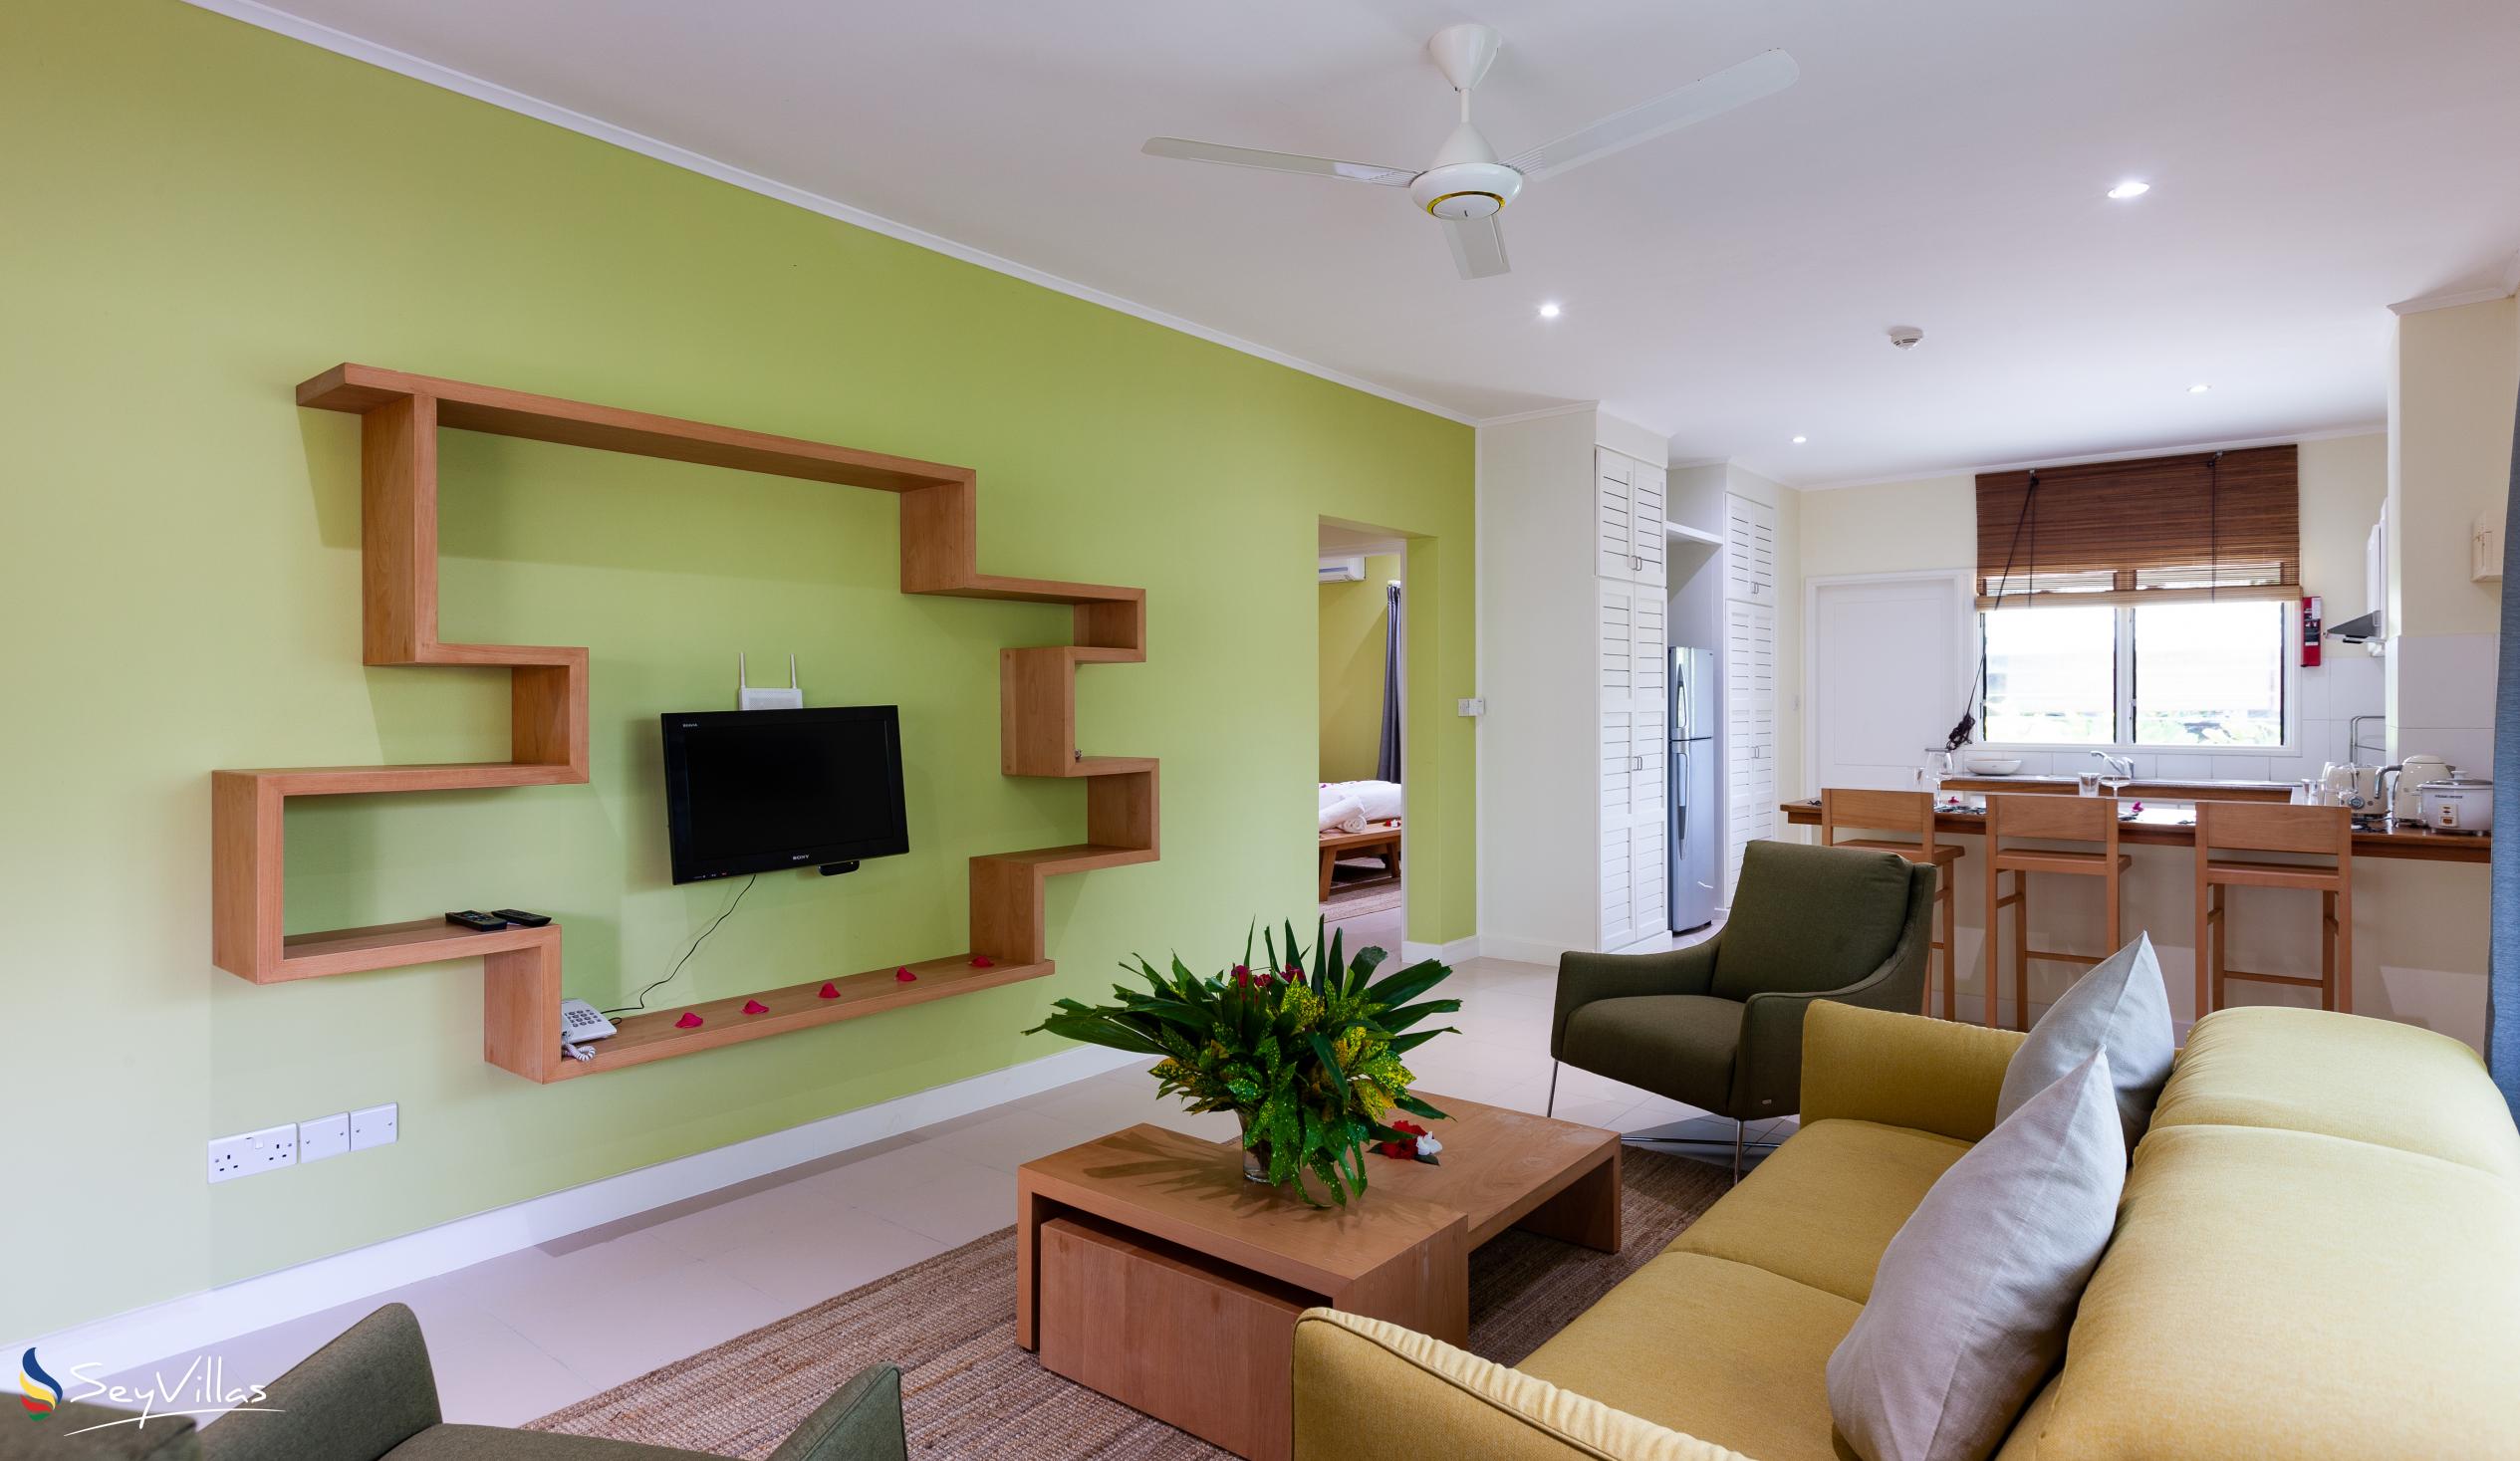 Foto 41: Residence Praslinoise - Familienappartement mit 2 Schlafzimmern (EG) - Praslin (Seychellen)